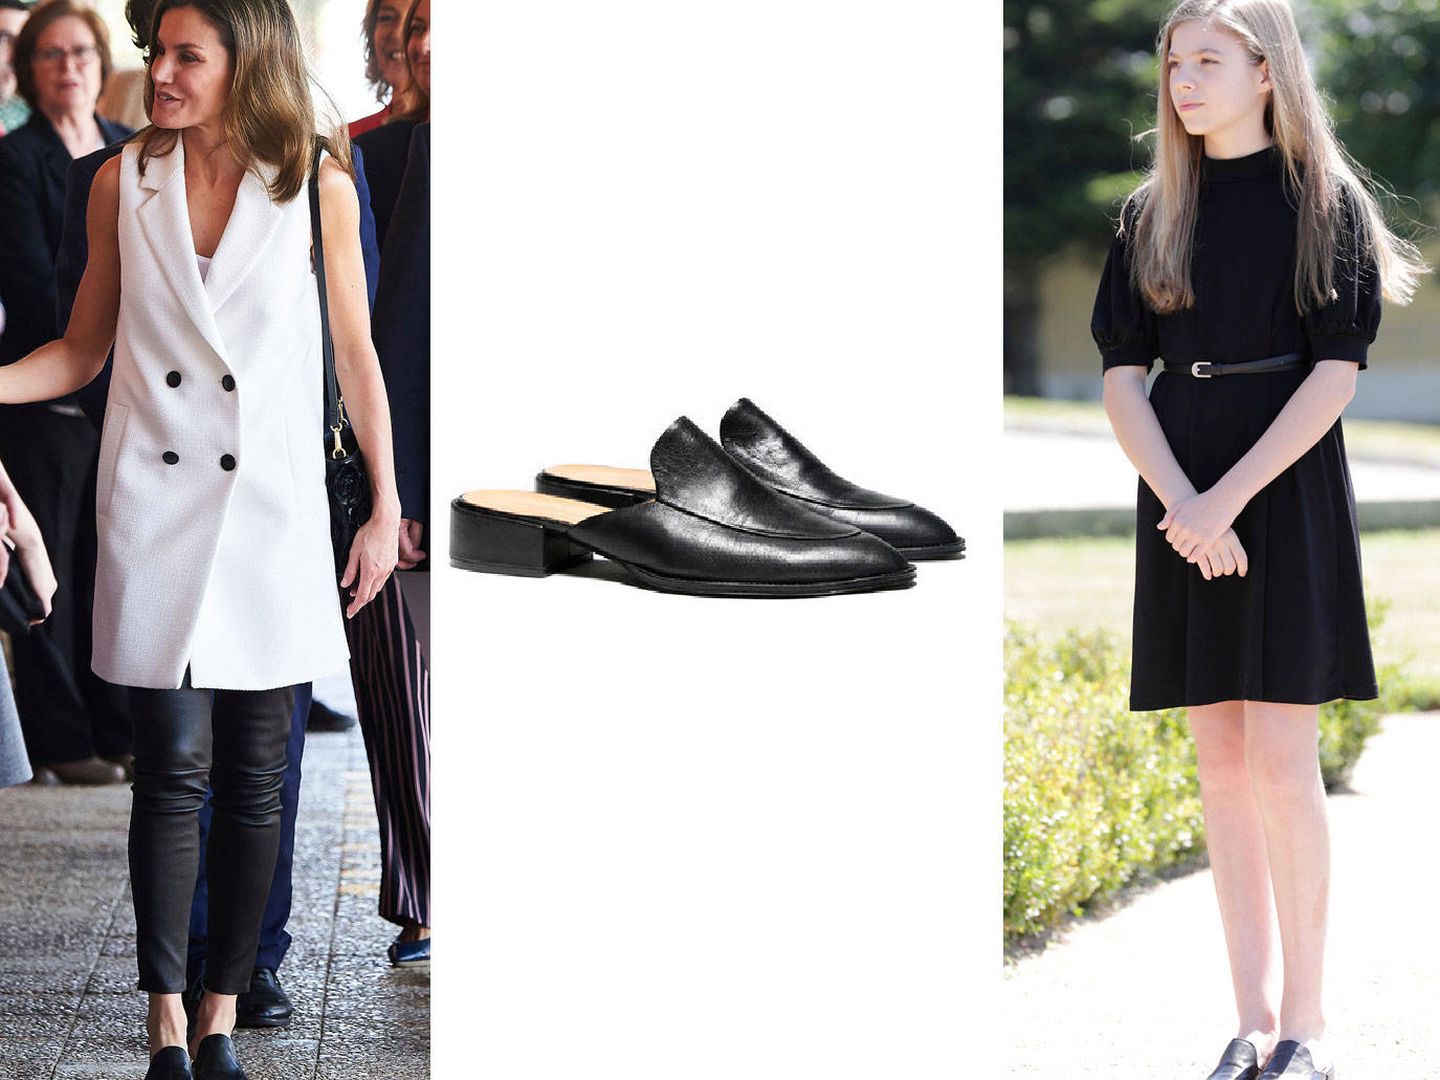 La reina Letizia y la infanta Sofía, con los mismos zapatos.